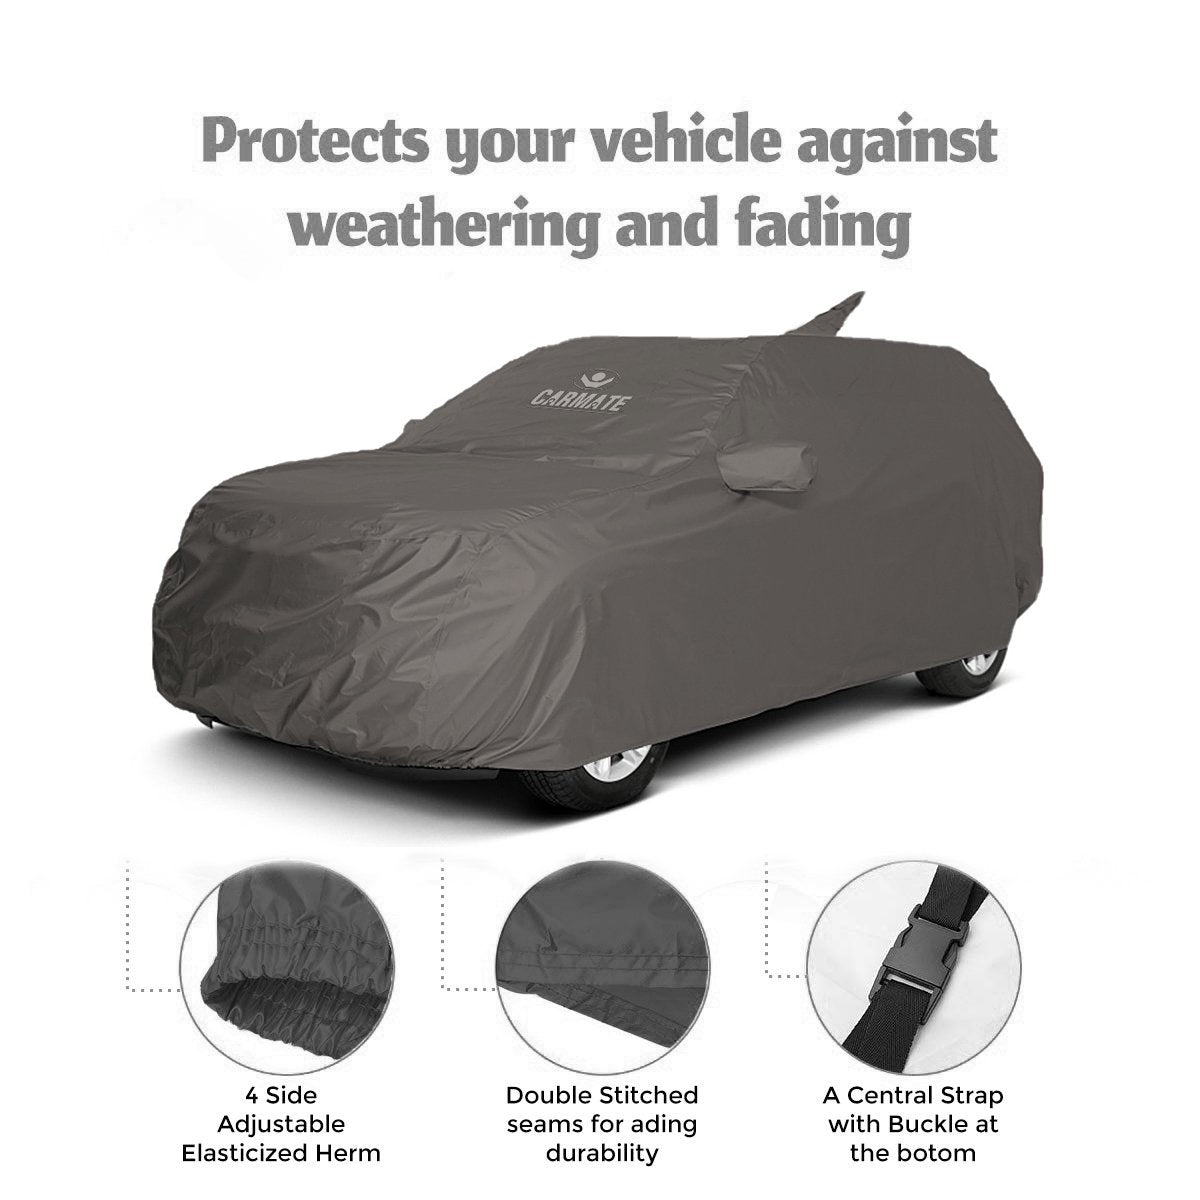 Carmate Car Body Cover 100% Waterproof Pride (Grey) for Jaguar - XF - CARMATE®